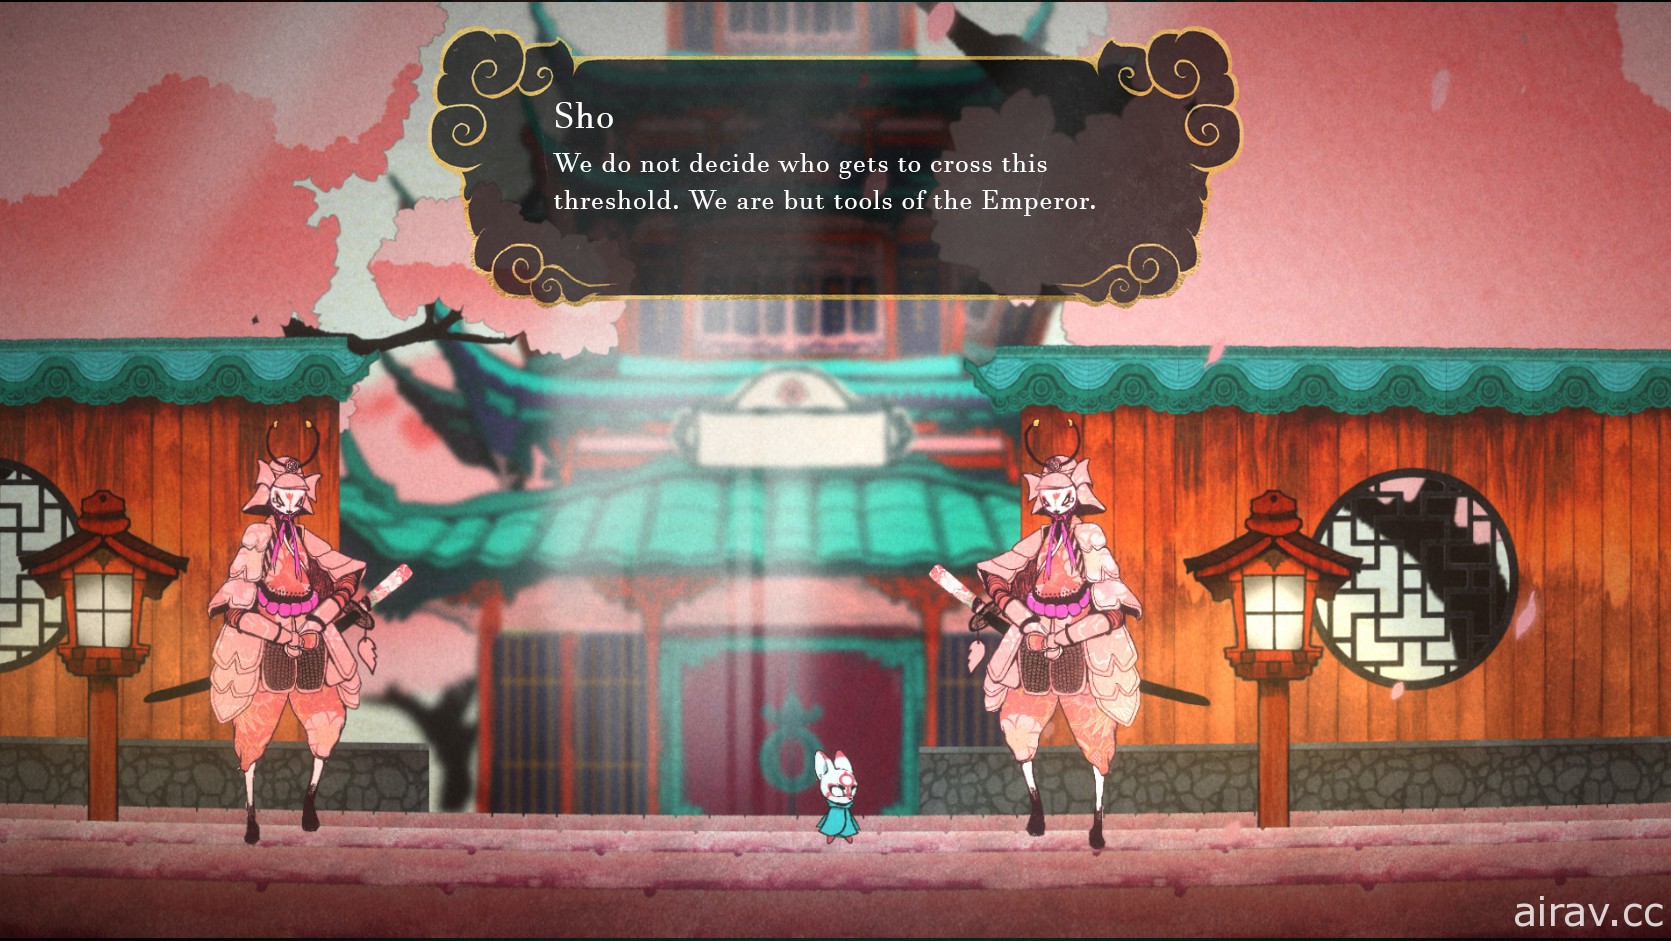 以日本妖怪传说为背景新作《小狐怪 Bo》公开 Steam 网页 将结合弹跳等移动玩法